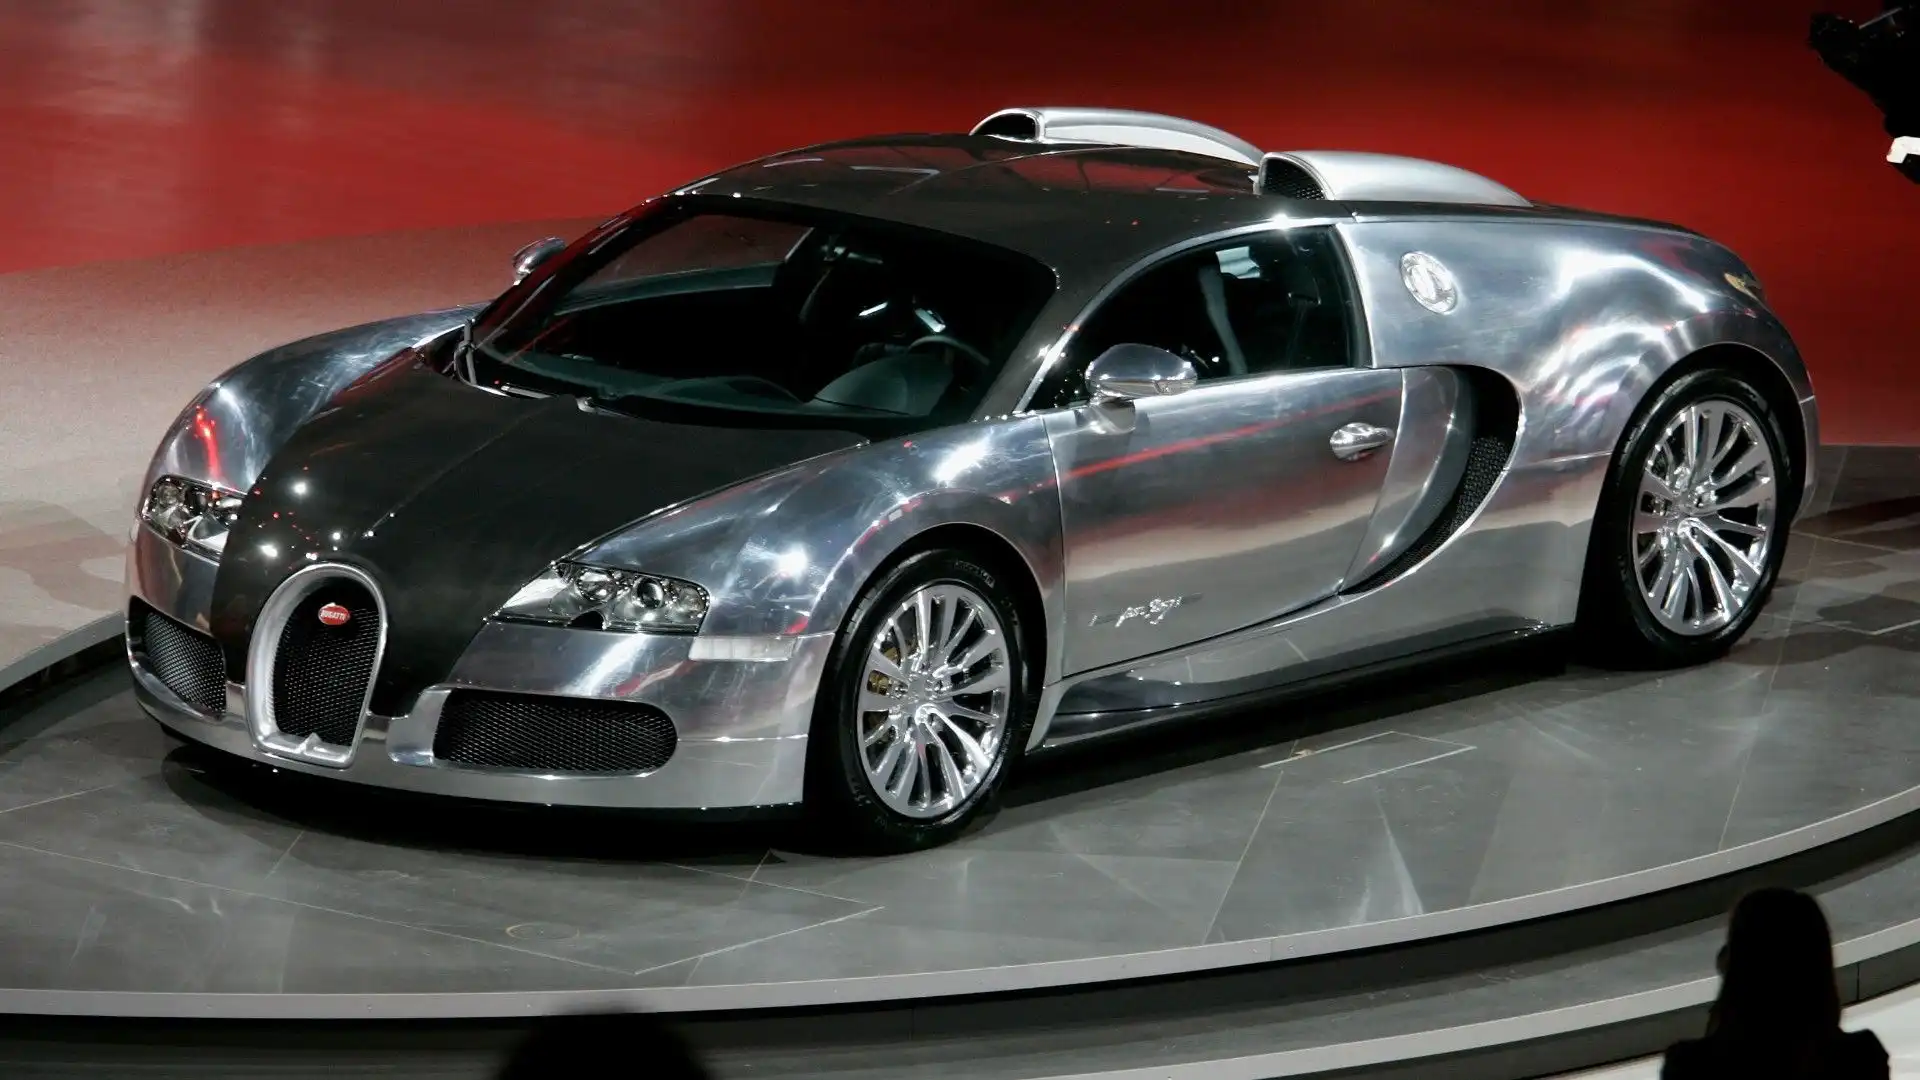 Bugatti nel 2010 ha presentato a Dubai cinque speciali esemplari della Veyron, chiamati "Nocturne". Il prezzo partiva da 2.4 milioni di dollari